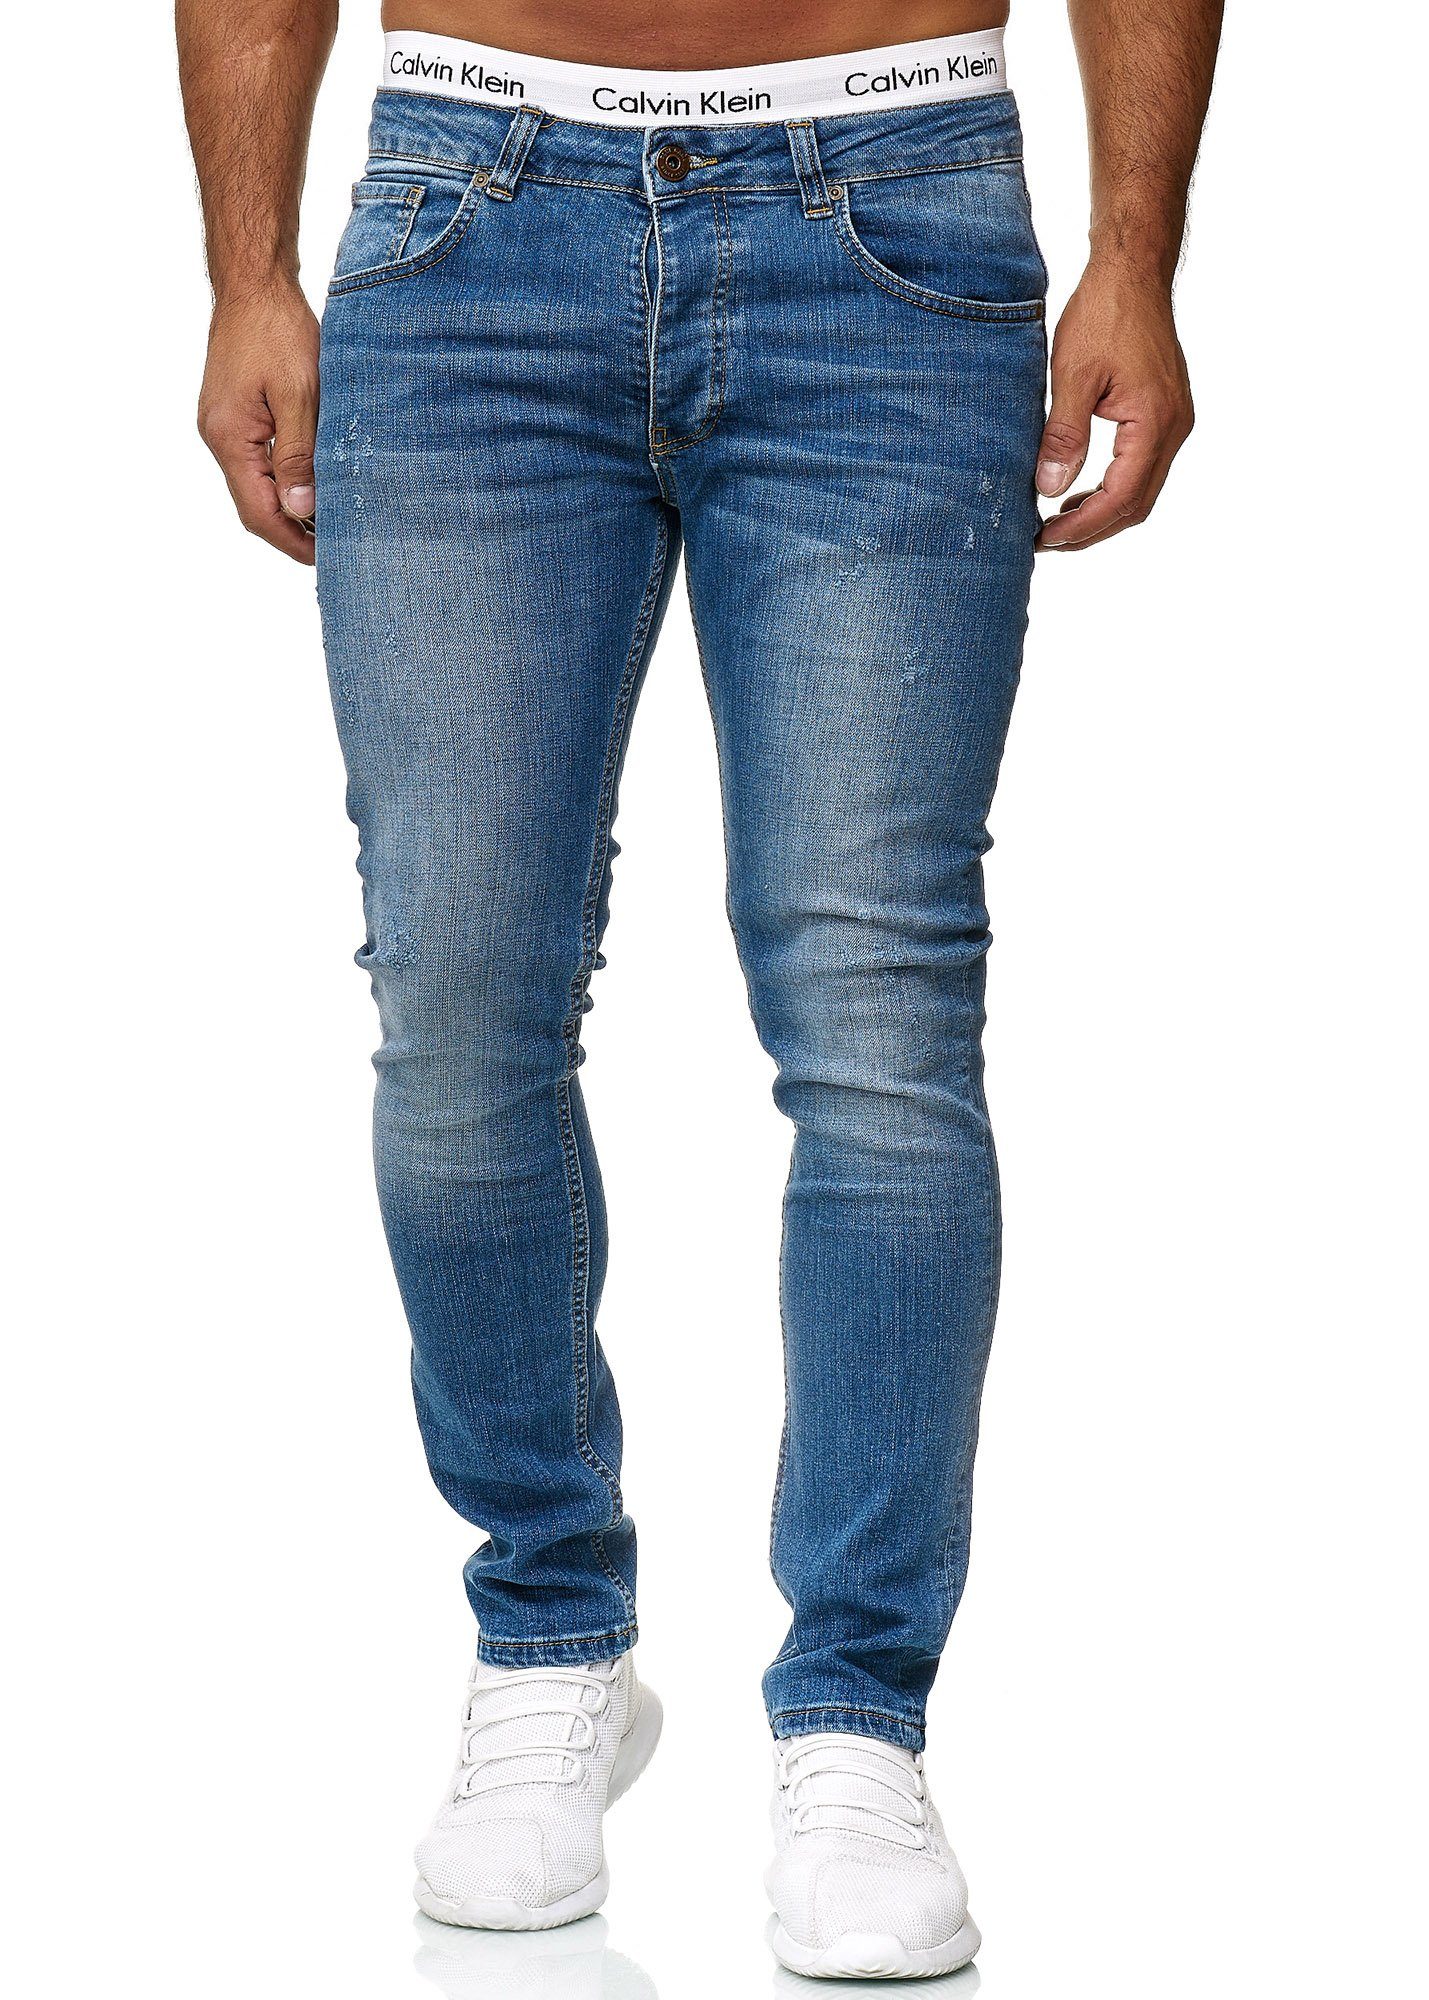 Code47 Skinny-fit-Jeans Code47 Basic Skinny Hose Regular 601 Used Blue Herren Jeanshose Fit Designer Jeans Old